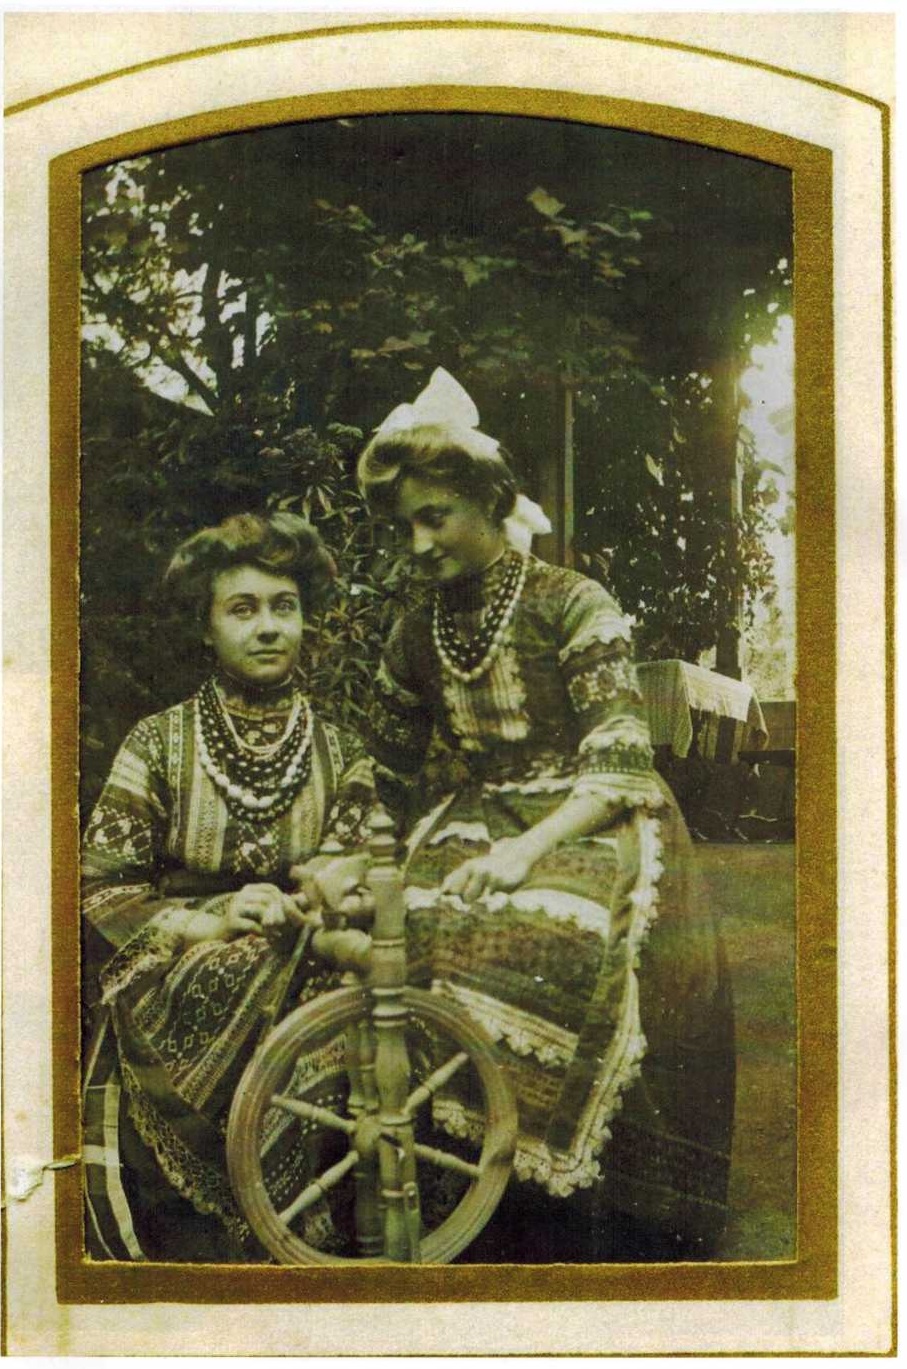 Лидия со служанкой - дочь управляющего Белорецким заводом К.О. Коля, конец 19 - нач. 20 века